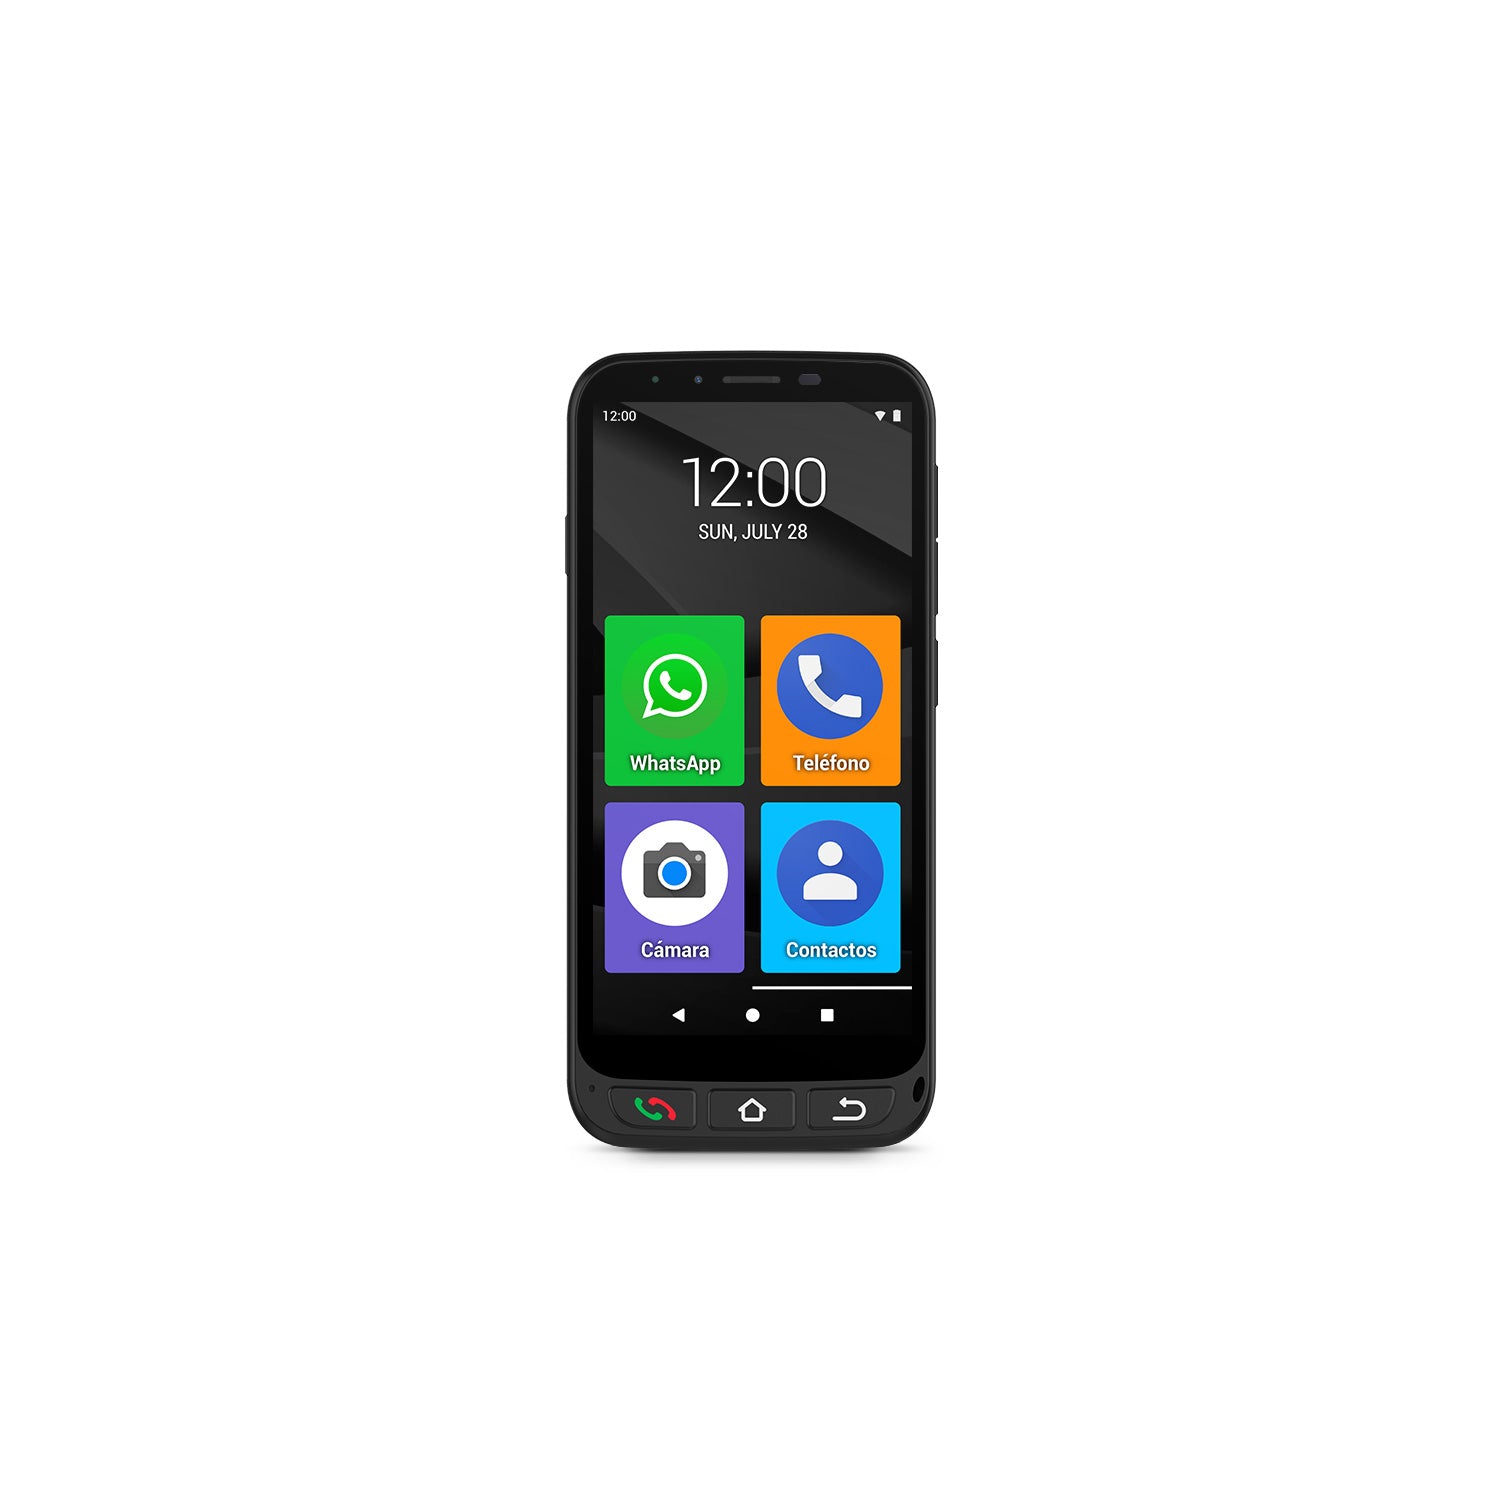 SPC ZEUS 4G PRO + carcasa – Smartphone para mayores, Modo Fácil con iconos  grandes, botón SOS, configuración remota, botones físicos, 5,5”, 3GB RAM